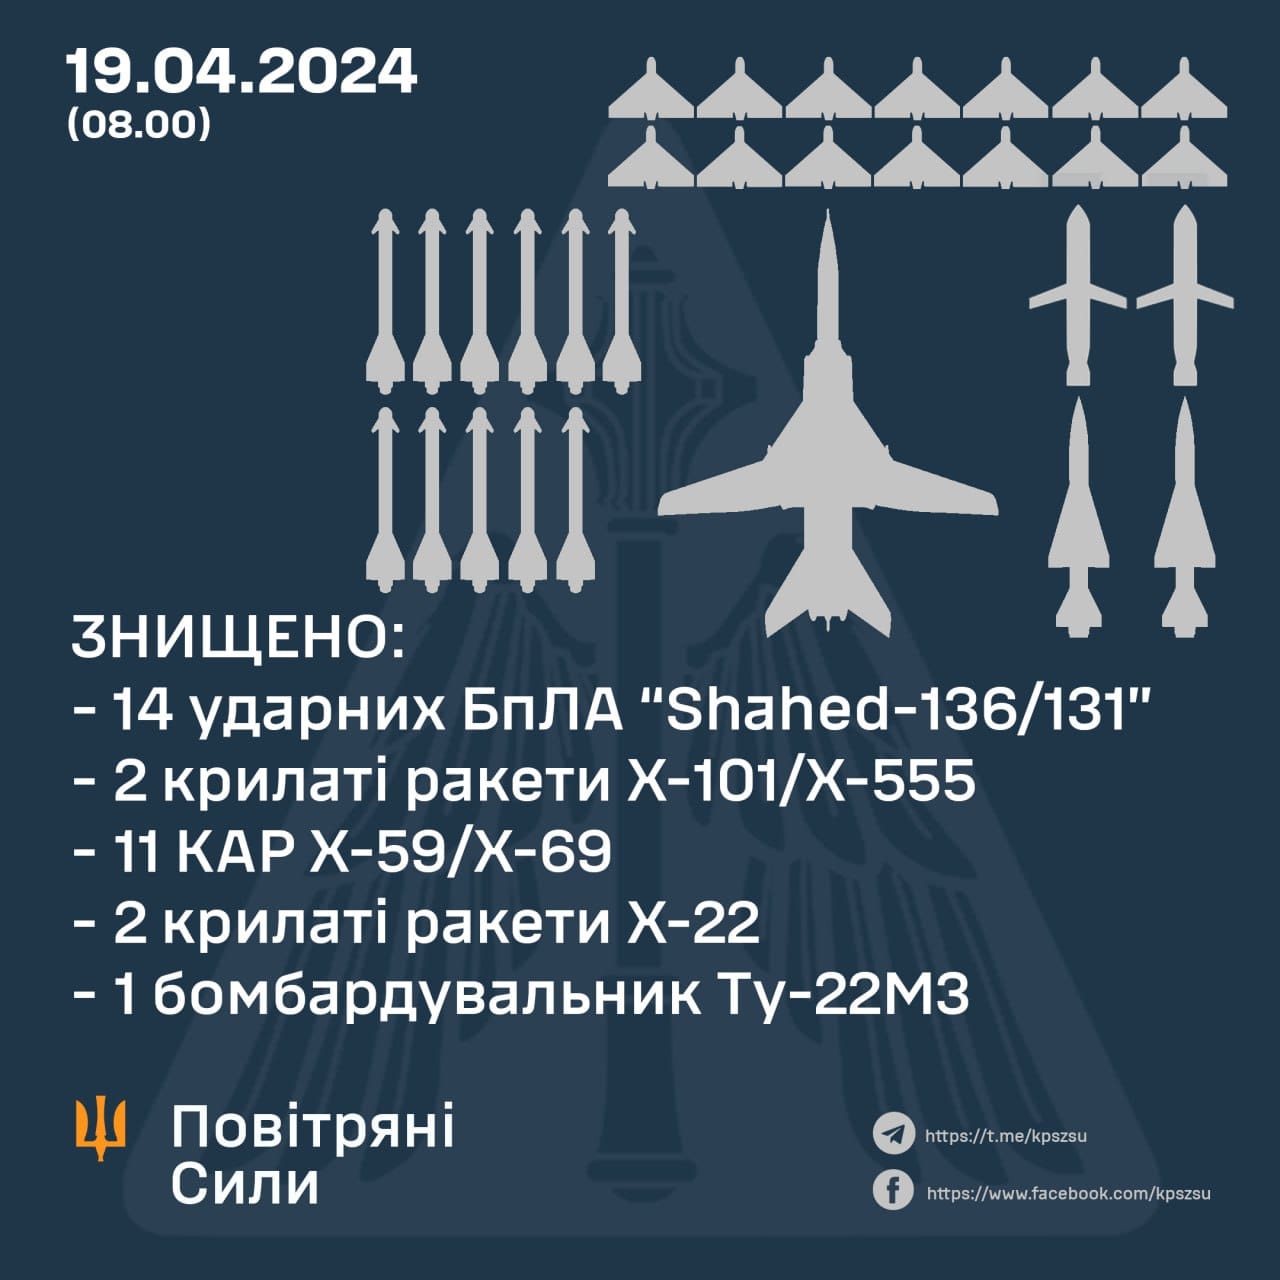 ВСУ отразили воздушное нападение ВКС РФ 19 апреля 2024 года